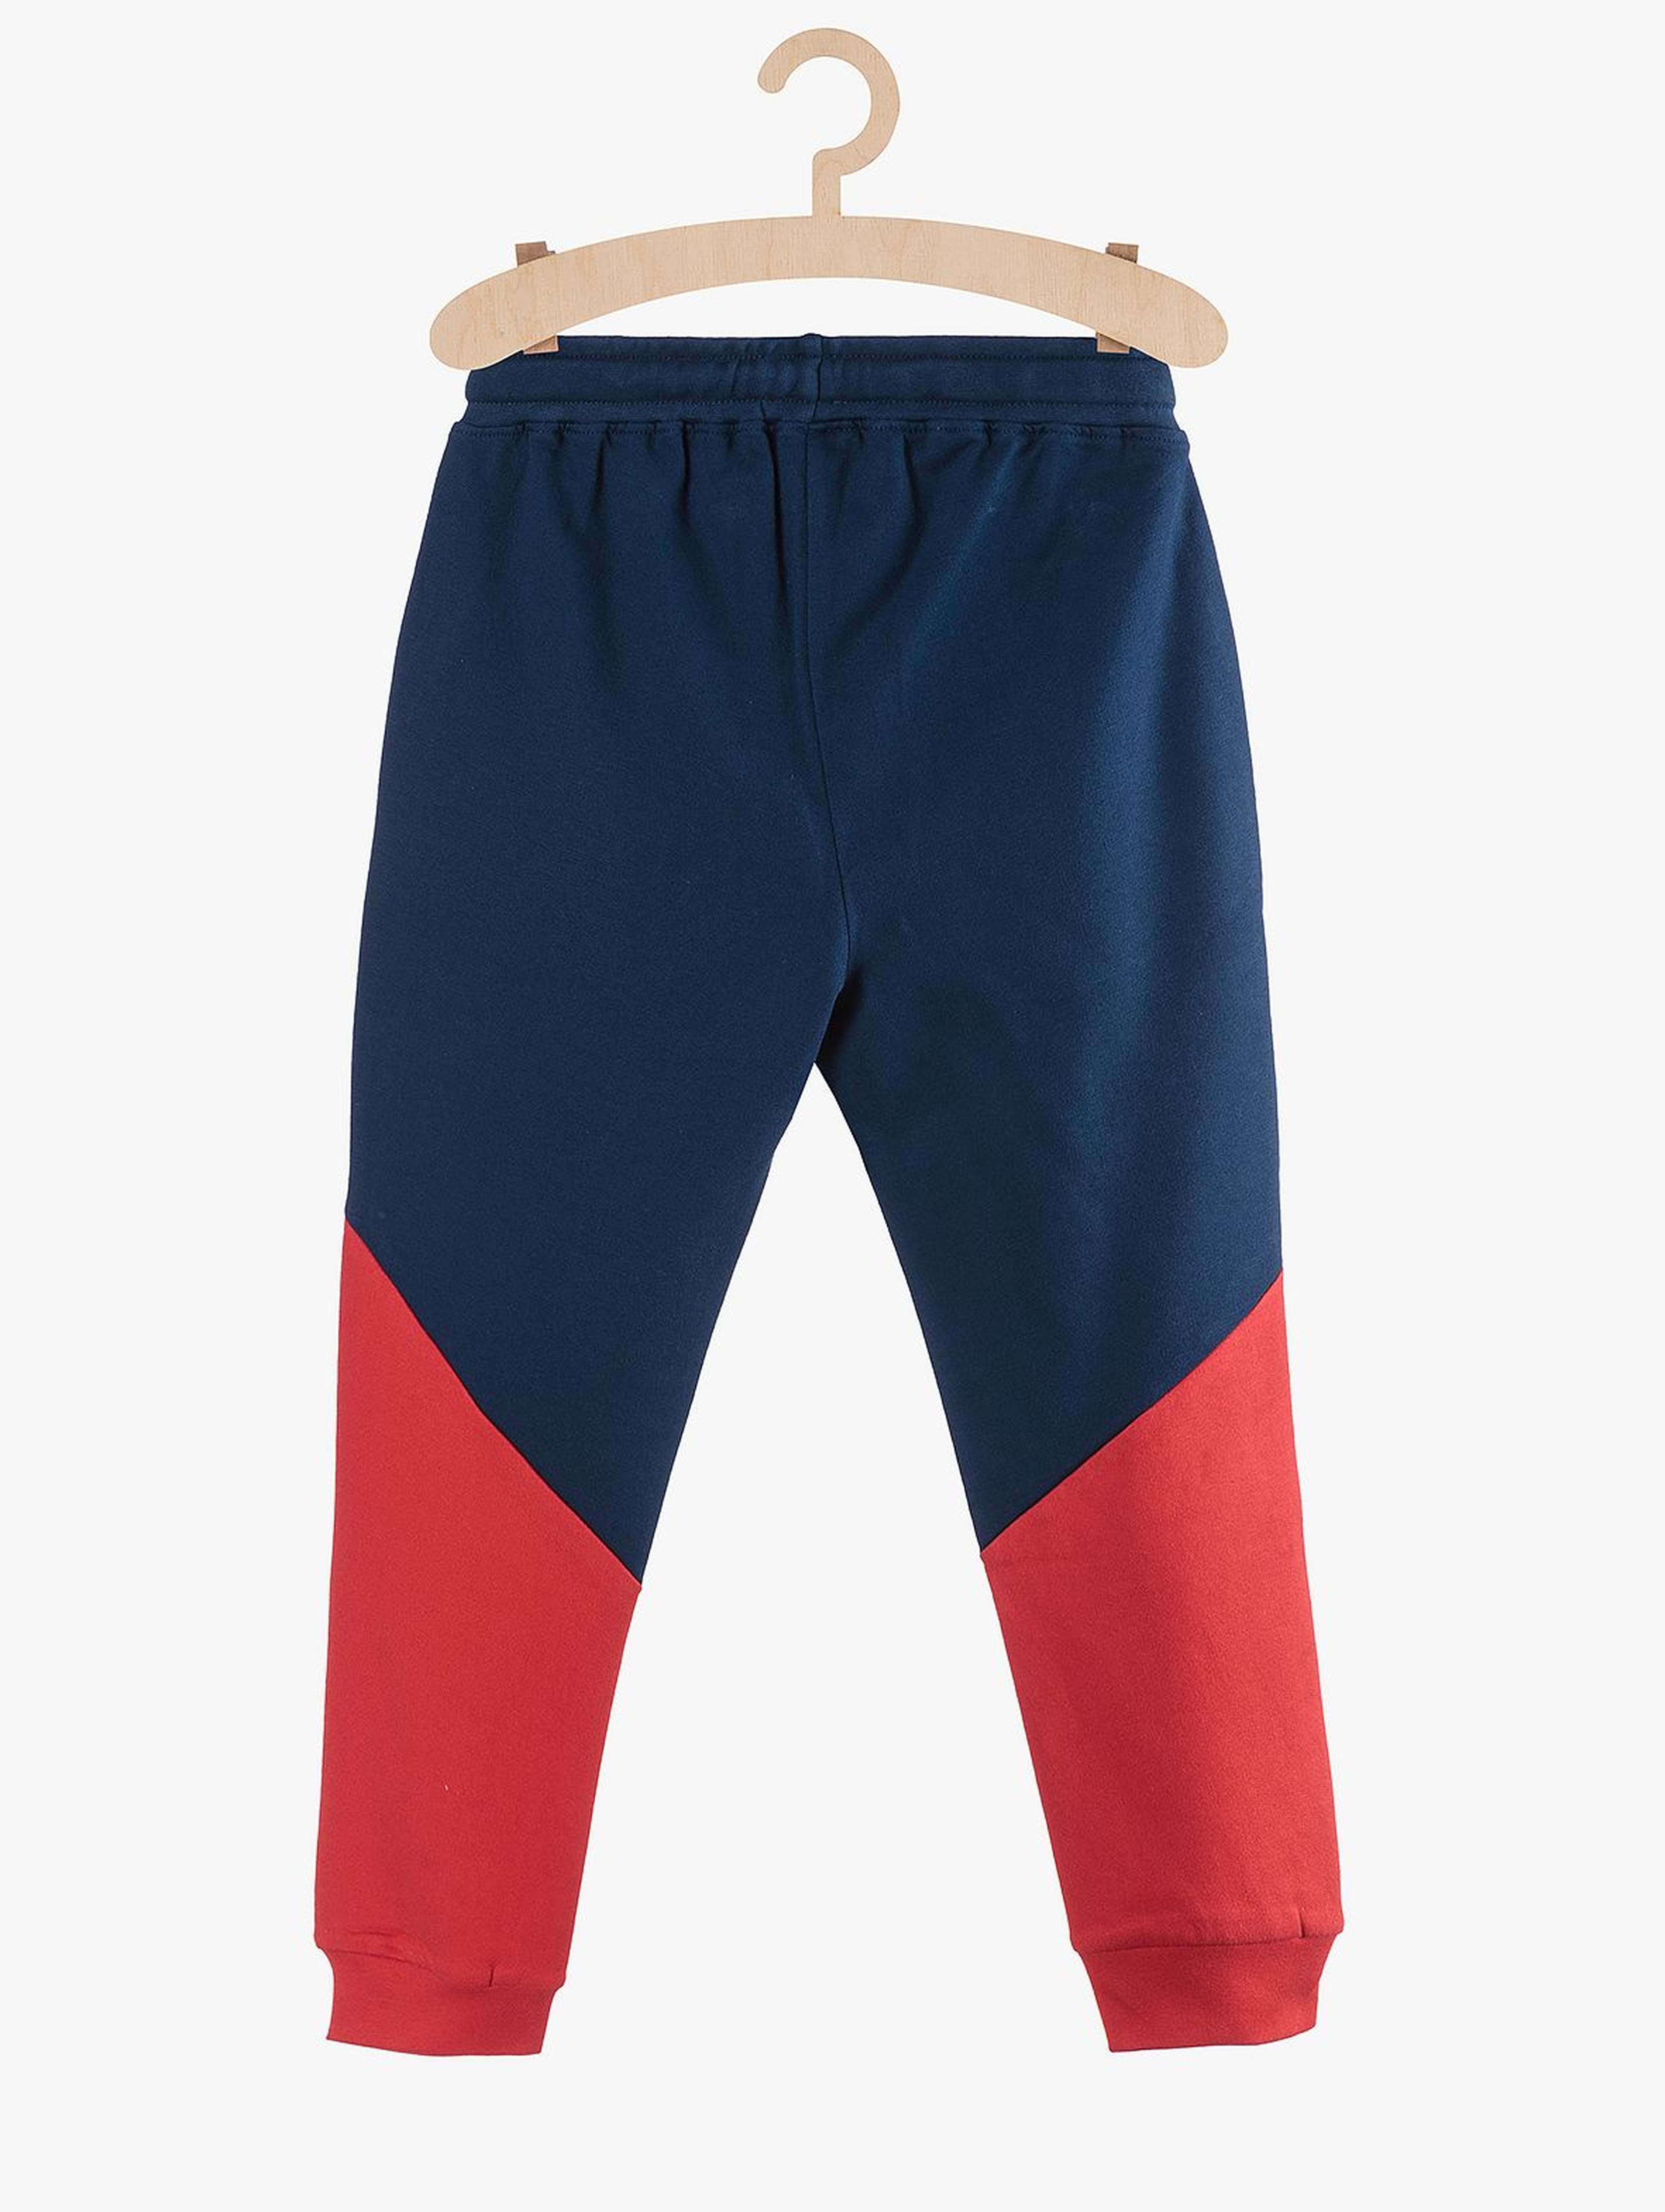 Dresowe spodnie dla chłopca- granatowo czerwone